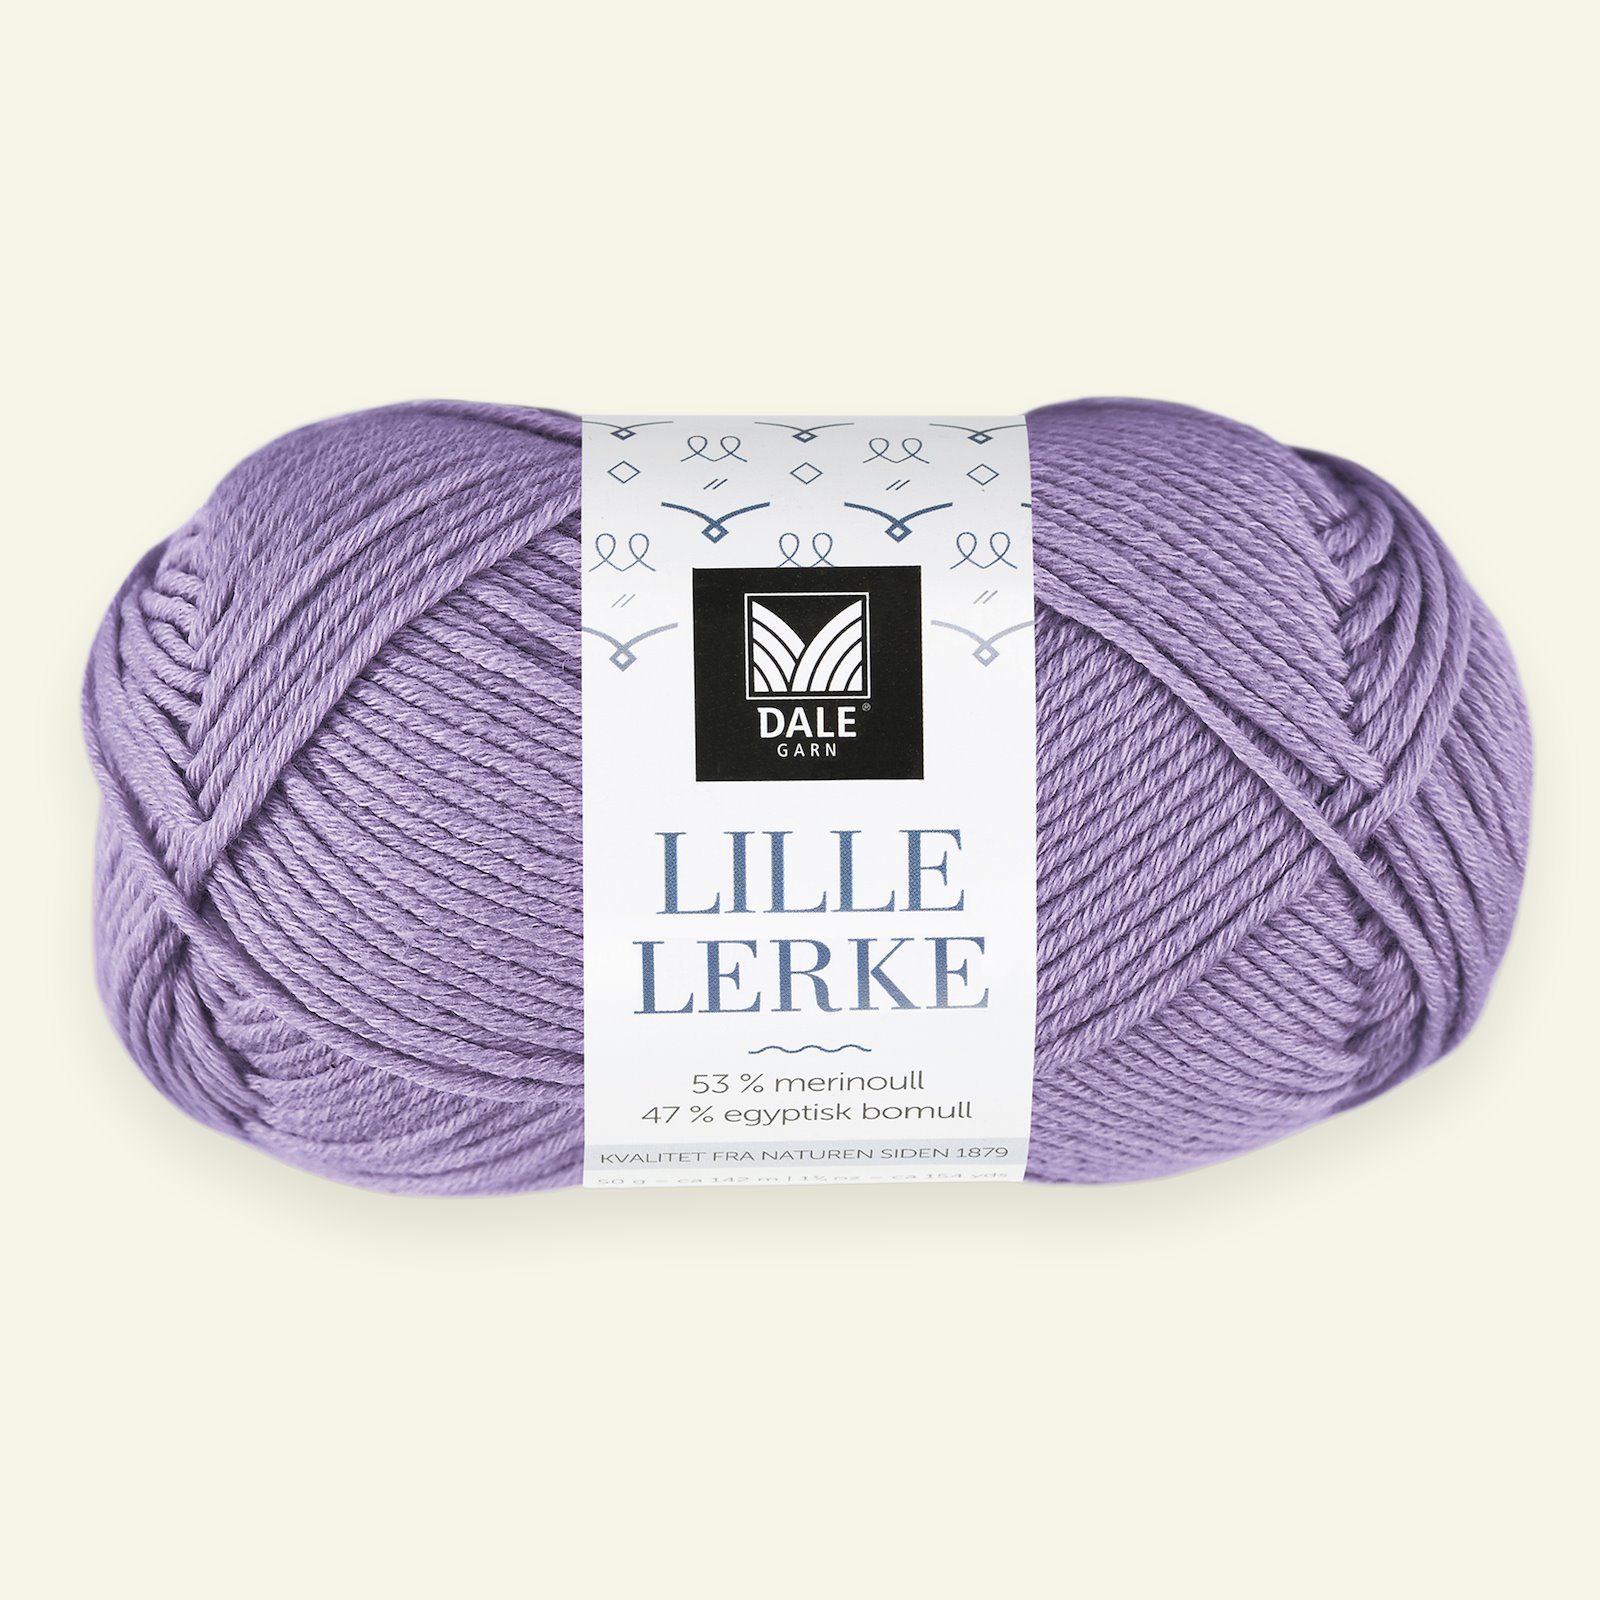 Dale Garn, merino/cotton yarn "Lille Lerke", light lavender (8159) 90000426_pack